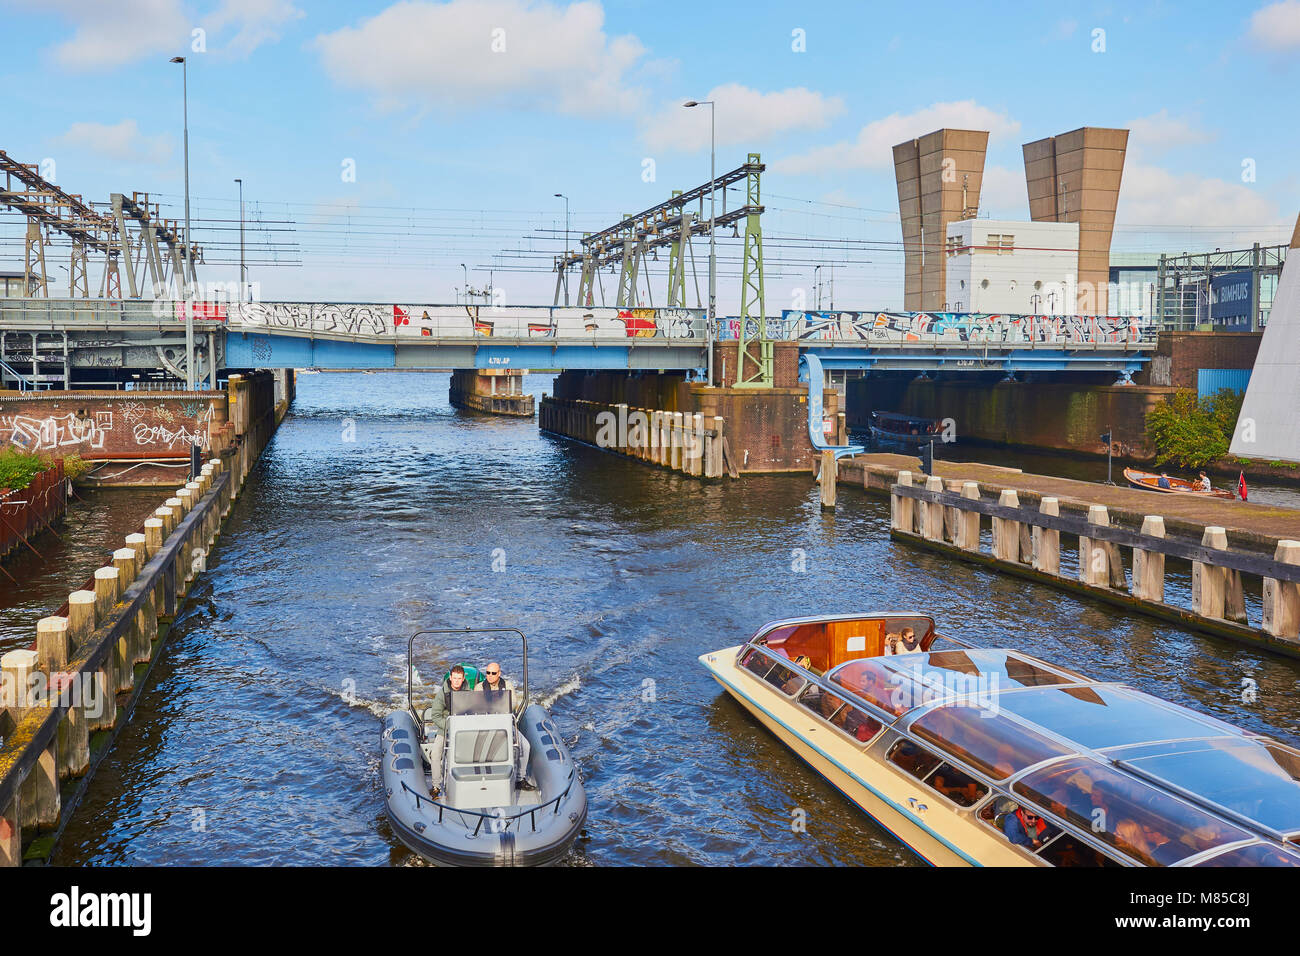 Des bateaux touristiques sur canal dans l'est des docks, à Amsterdam, Pays-Bas Banque D'Images